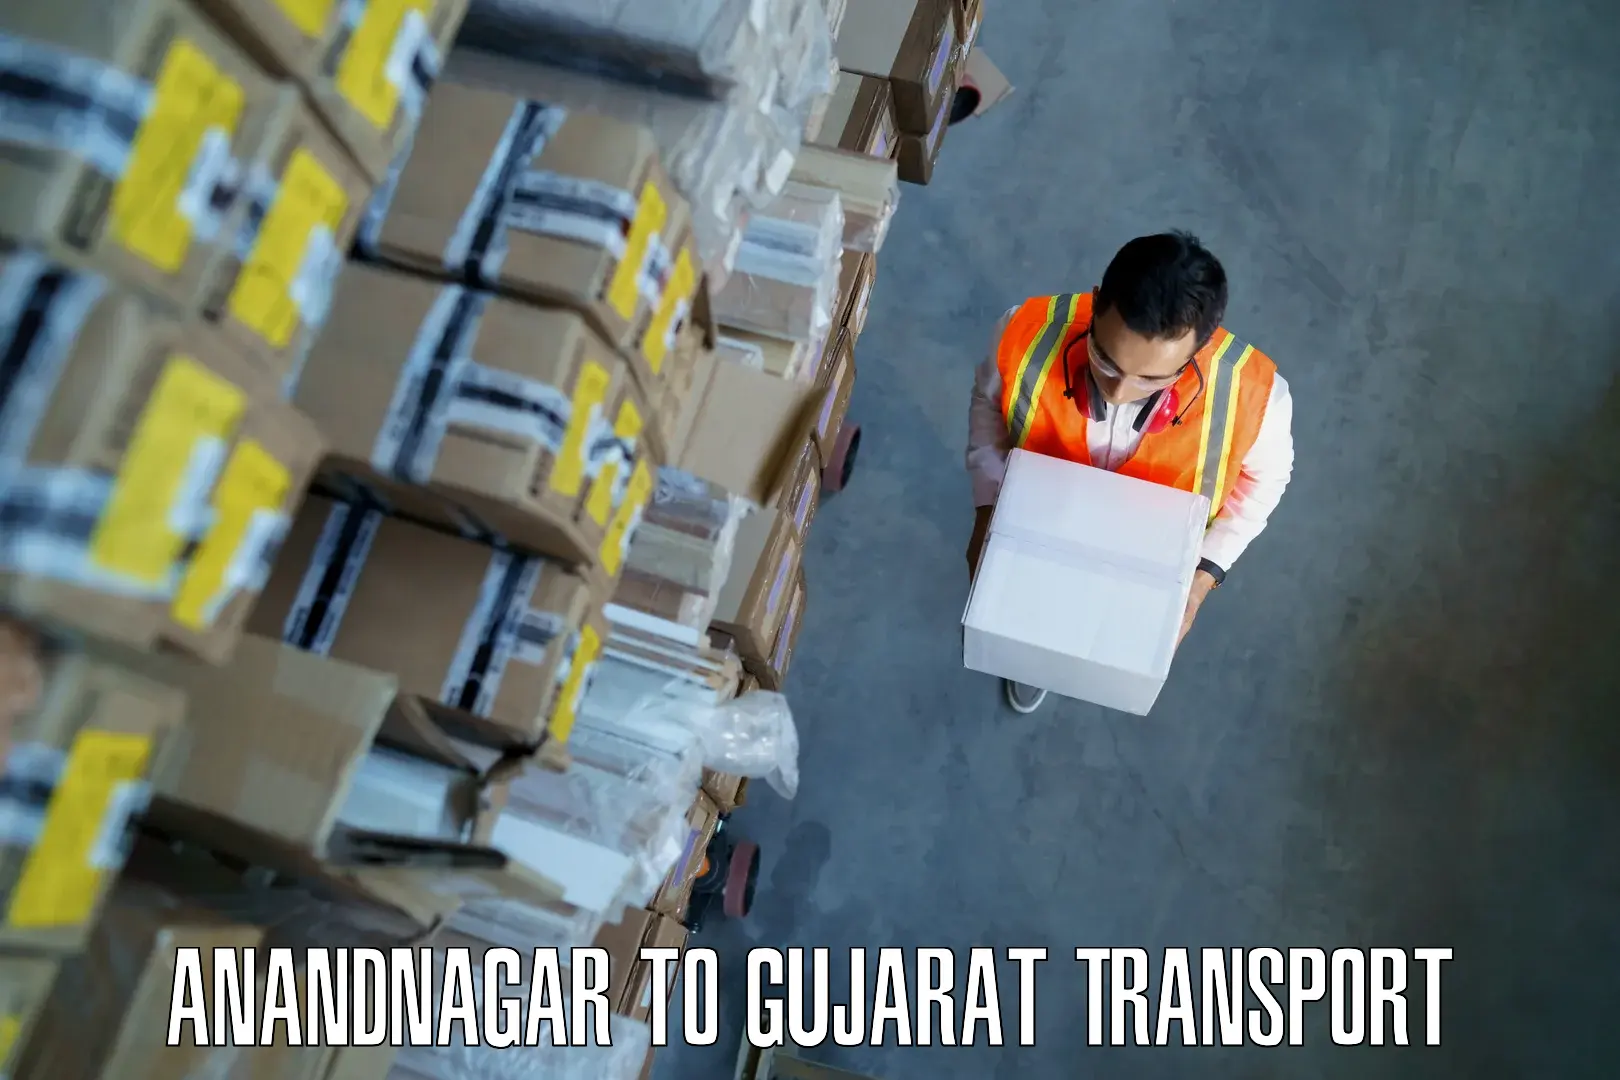 Nationwide transport services Anandnagar to Vapi